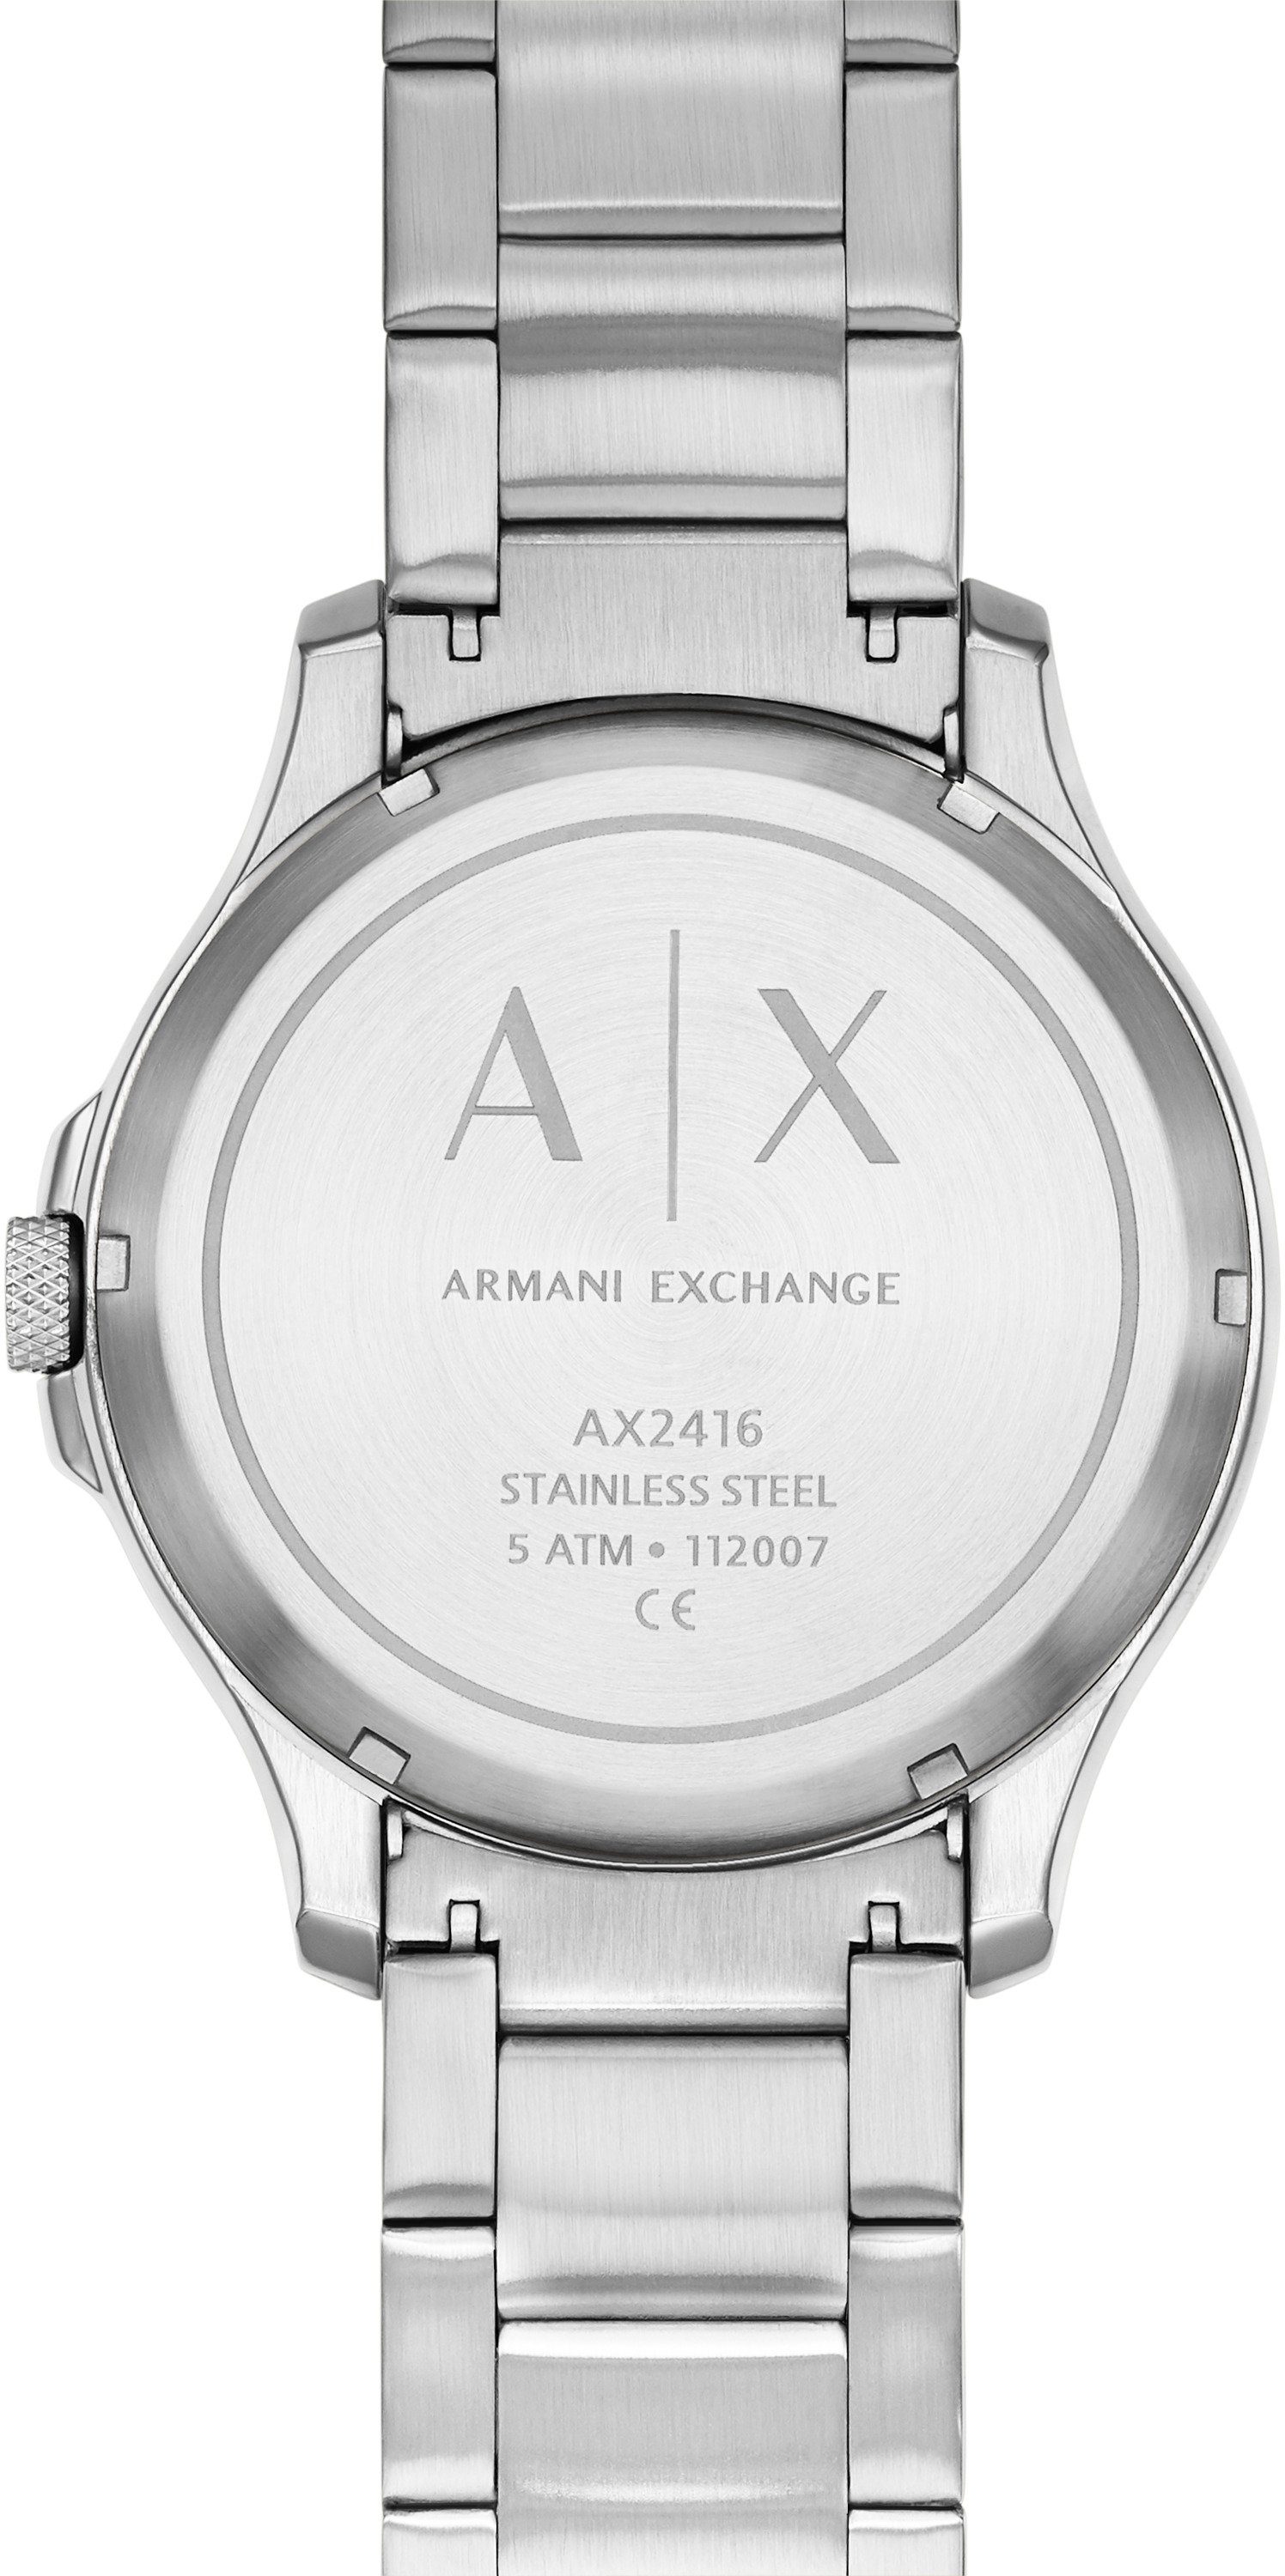 ARMANI EXCHANGE Automatikuhr »AX2416« online kaufen | OTTO